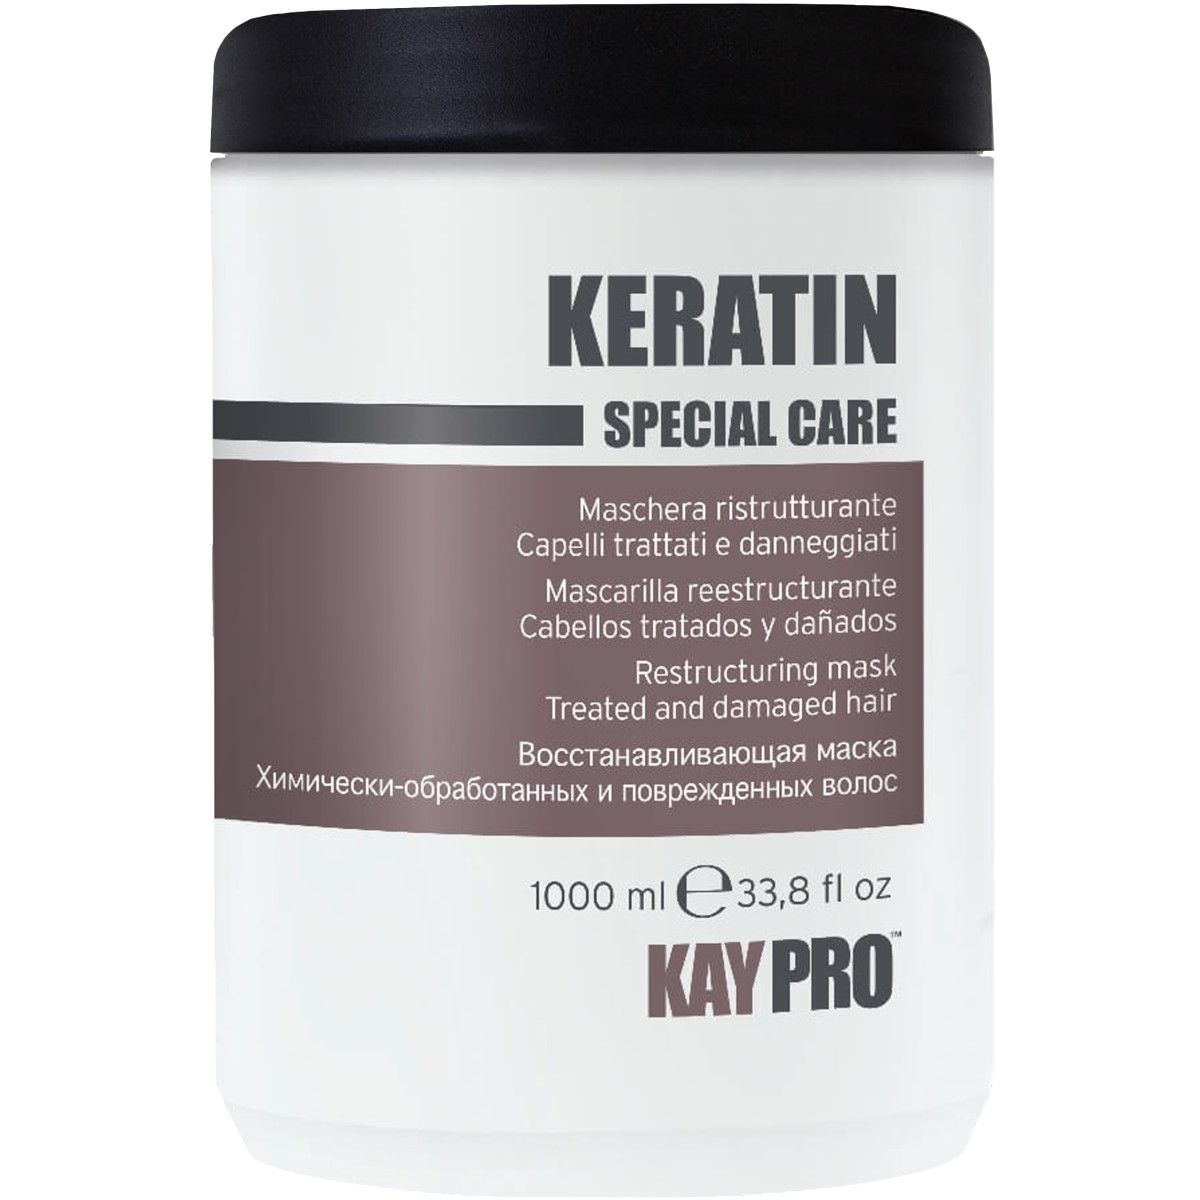 KayPro Keratin Special Care - maska regenerująca z keratyną, 1000ml